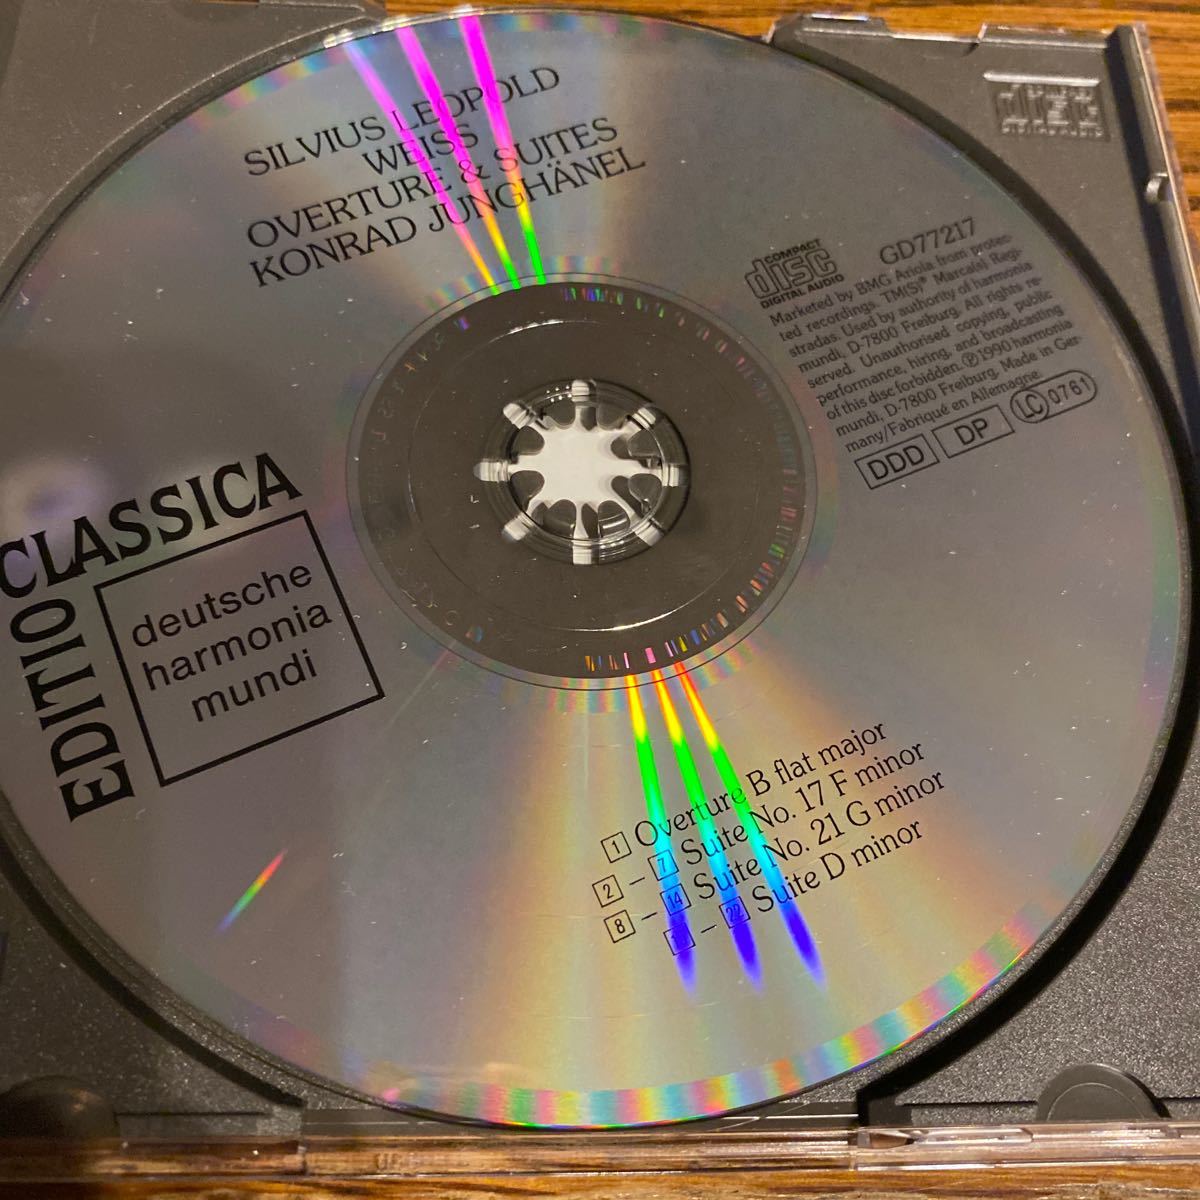 中古CD シルヴィウス レオポルト ヴァイス 序曲と組曲 コンラート ユングヘーネル SILVIUS LEOPOLD WEISS OVERTURE & SUITESの画像3